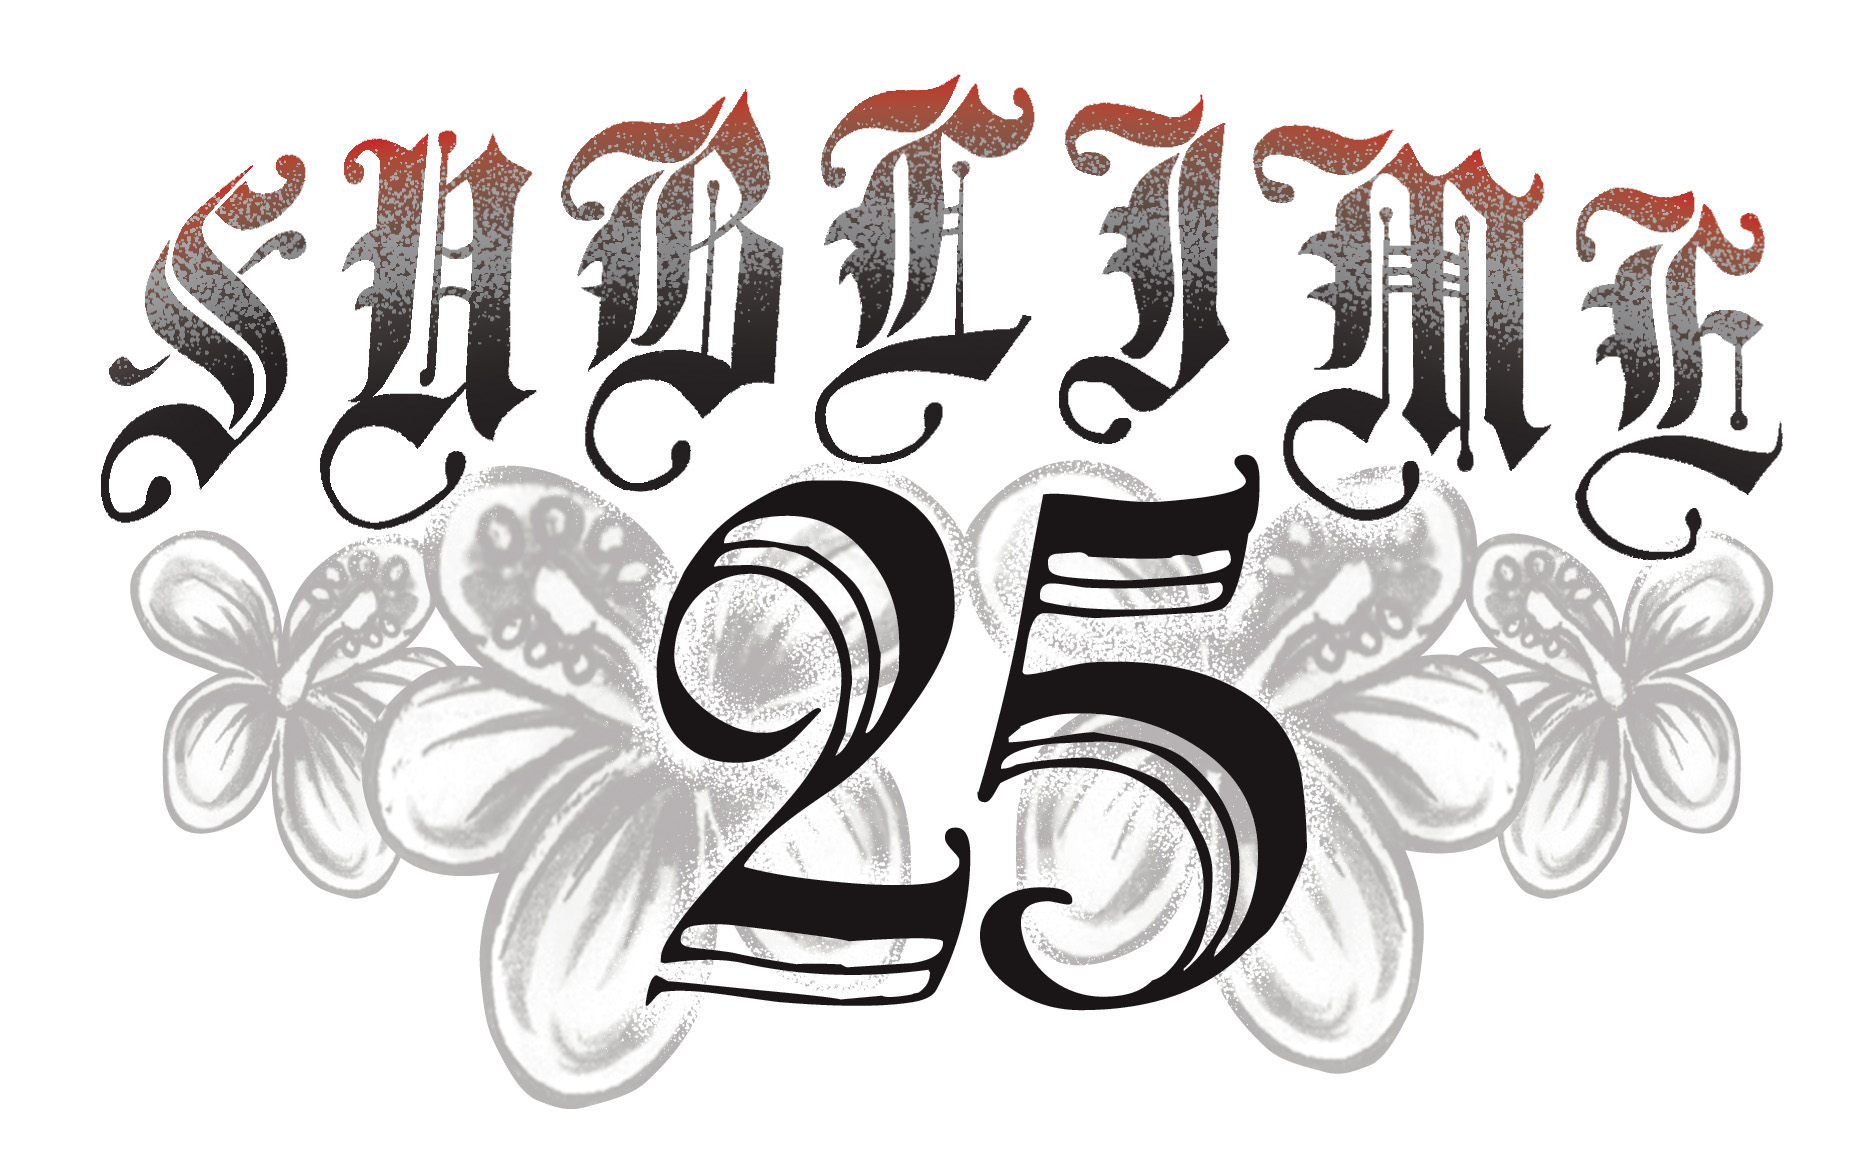 Sublime25_Logo.jpg